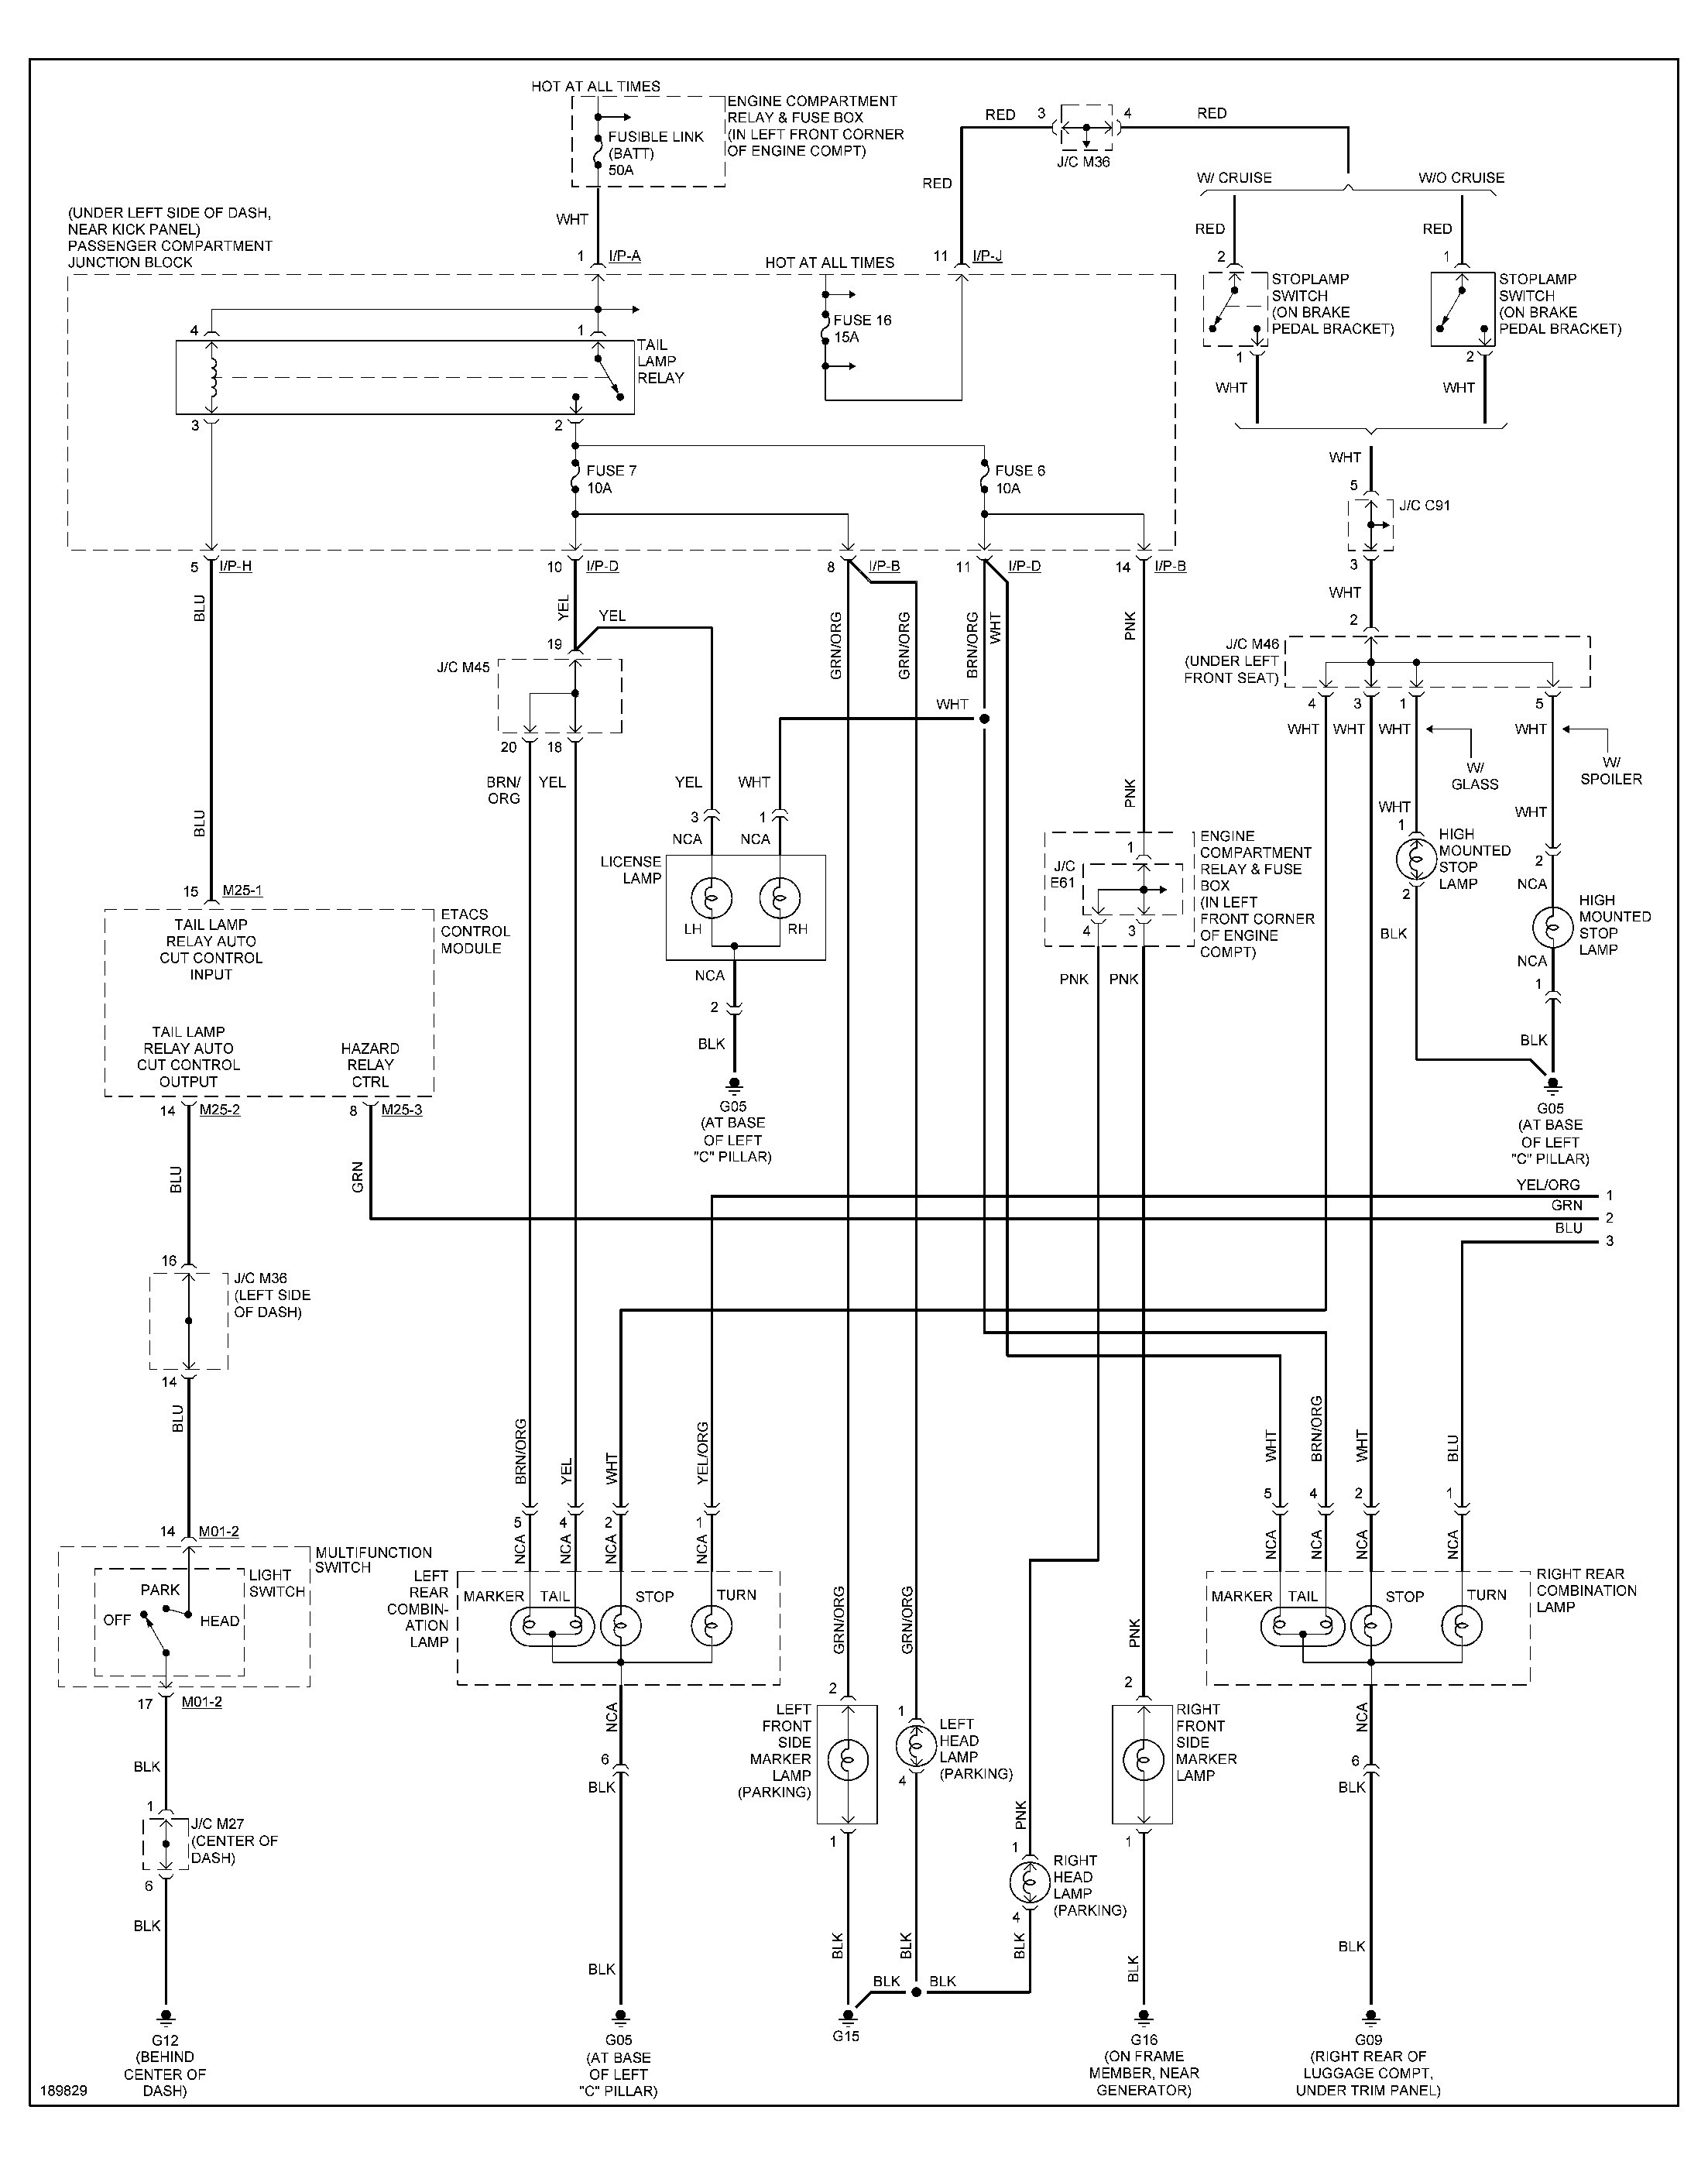 2001 Hyundai Elantra Radio Wiring Diagram from detoxicrecenze.com